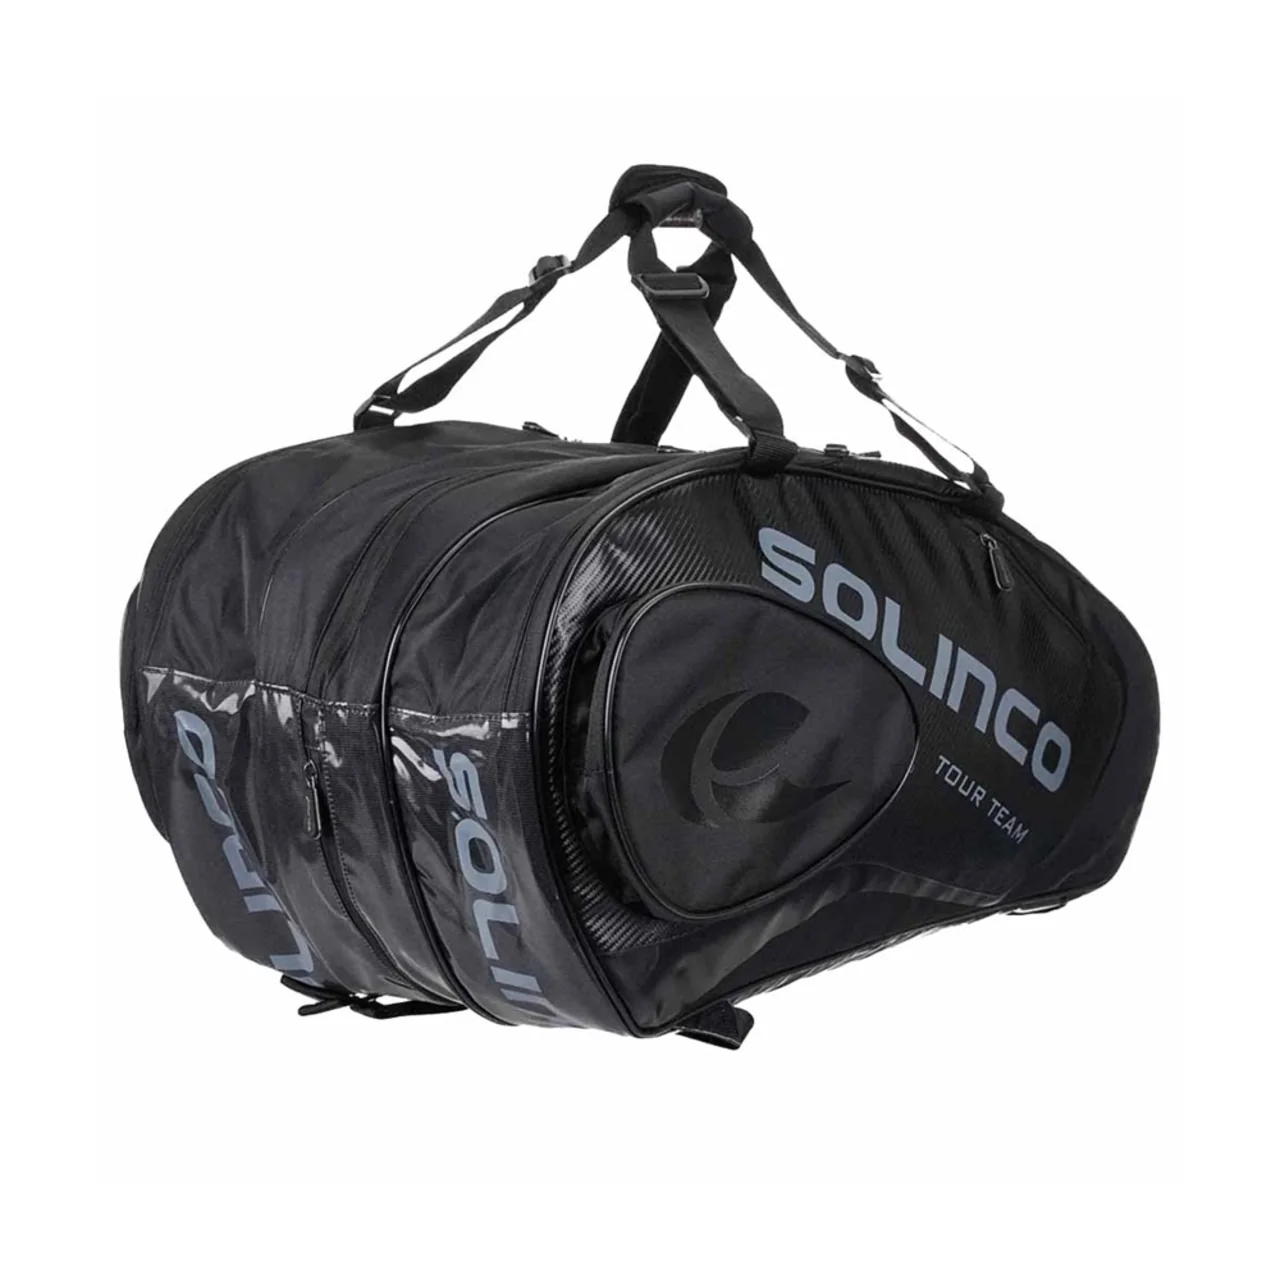 Solinco Tour Bag 15-pack Blackout 2022